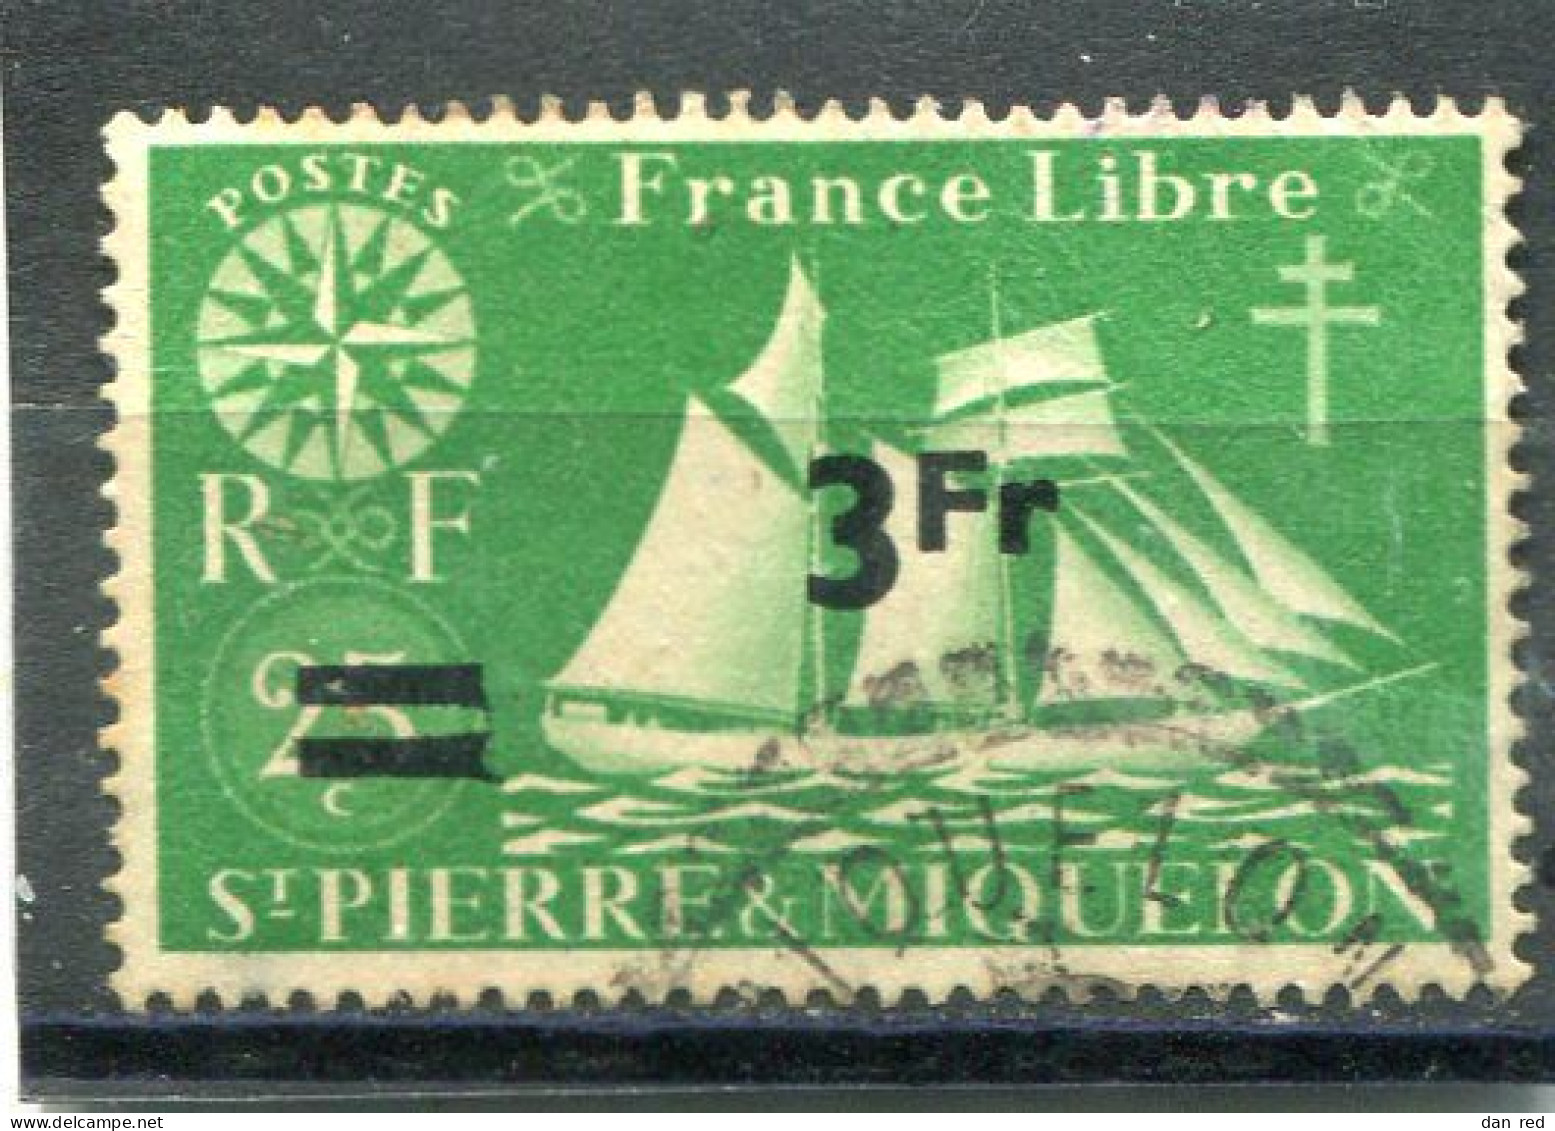 SAINT-PIERRE ET MIQUELON N° 320 (Y&T) (Oblitéré) - Used Stamps